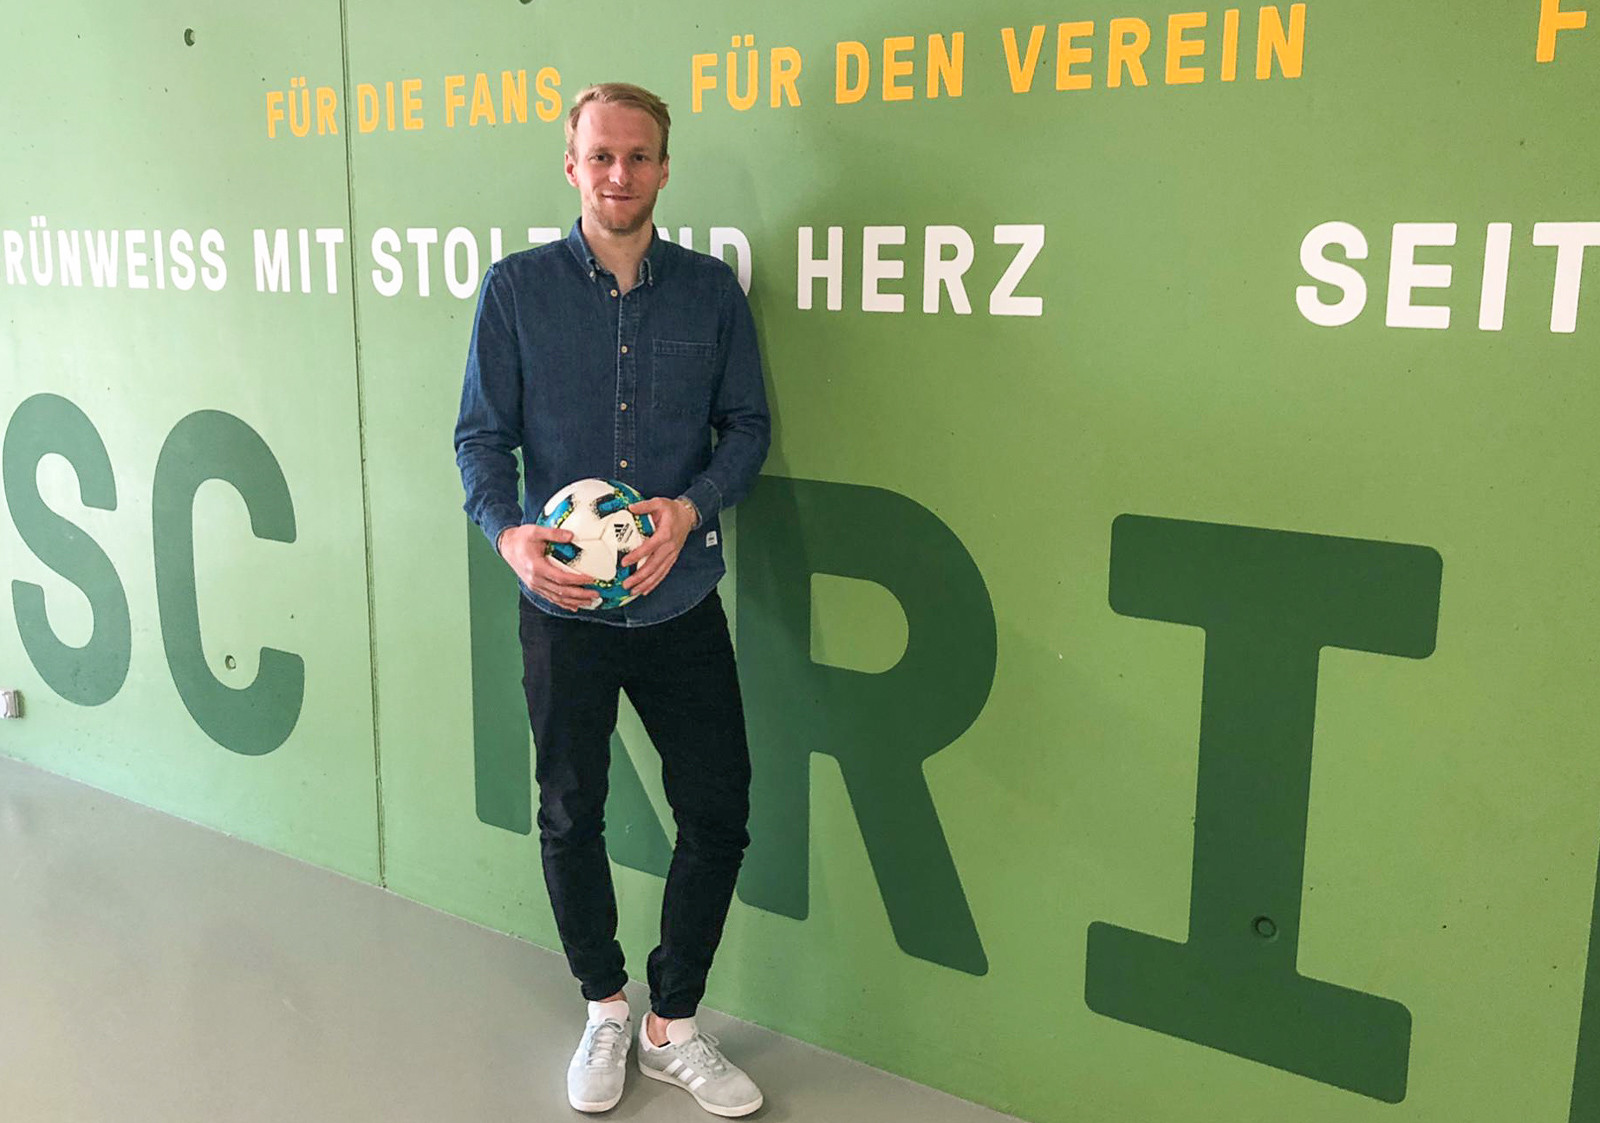 In der Fussball-Provinz erhielt Marco Wiget Ecken und Kanten